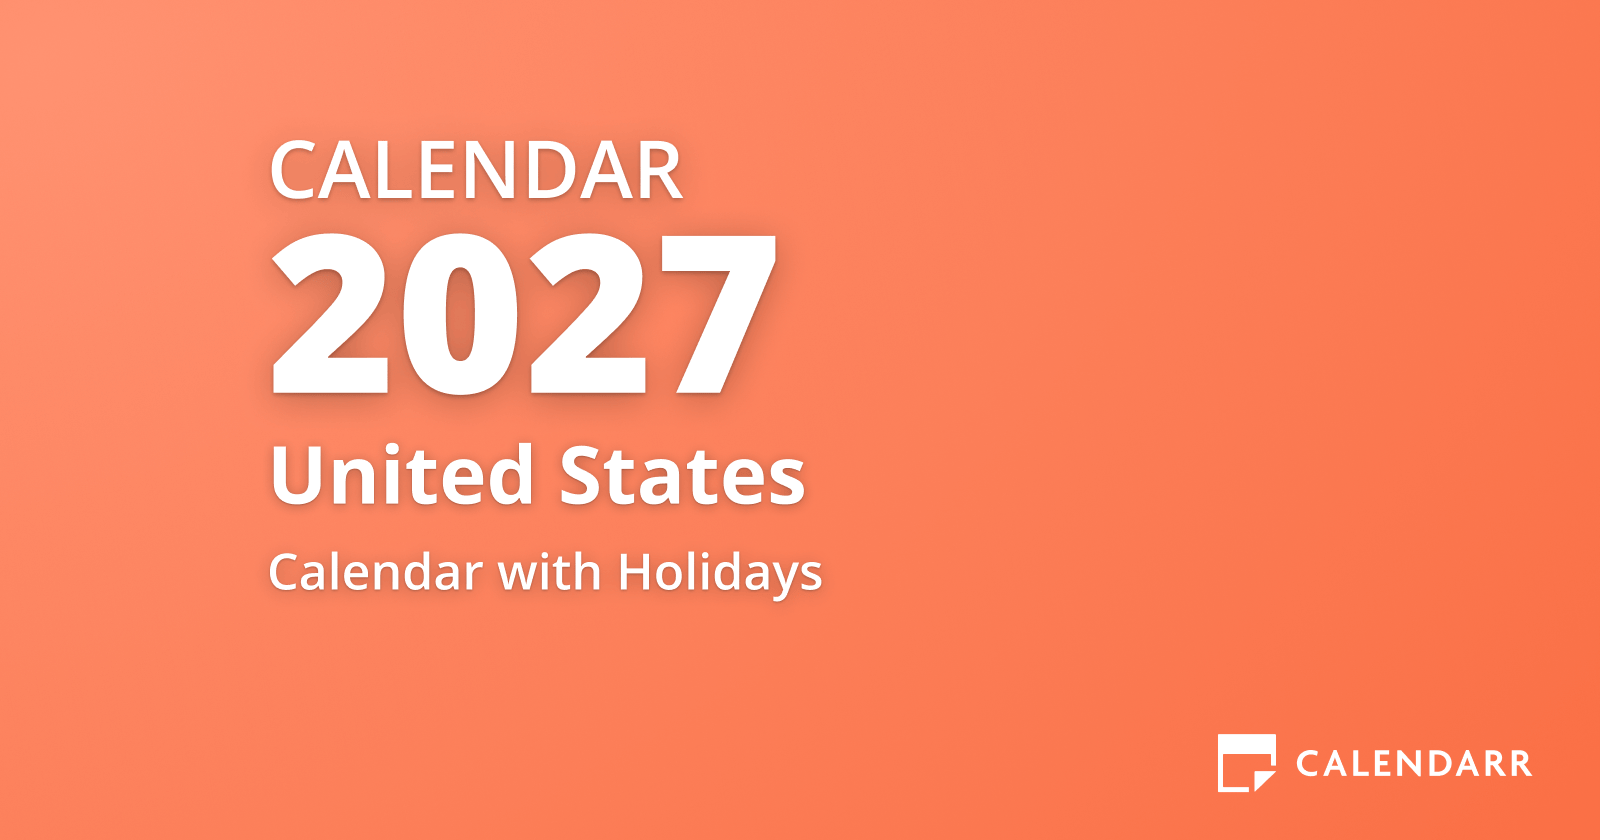 Calendar 2027 All Holidays Calendarr